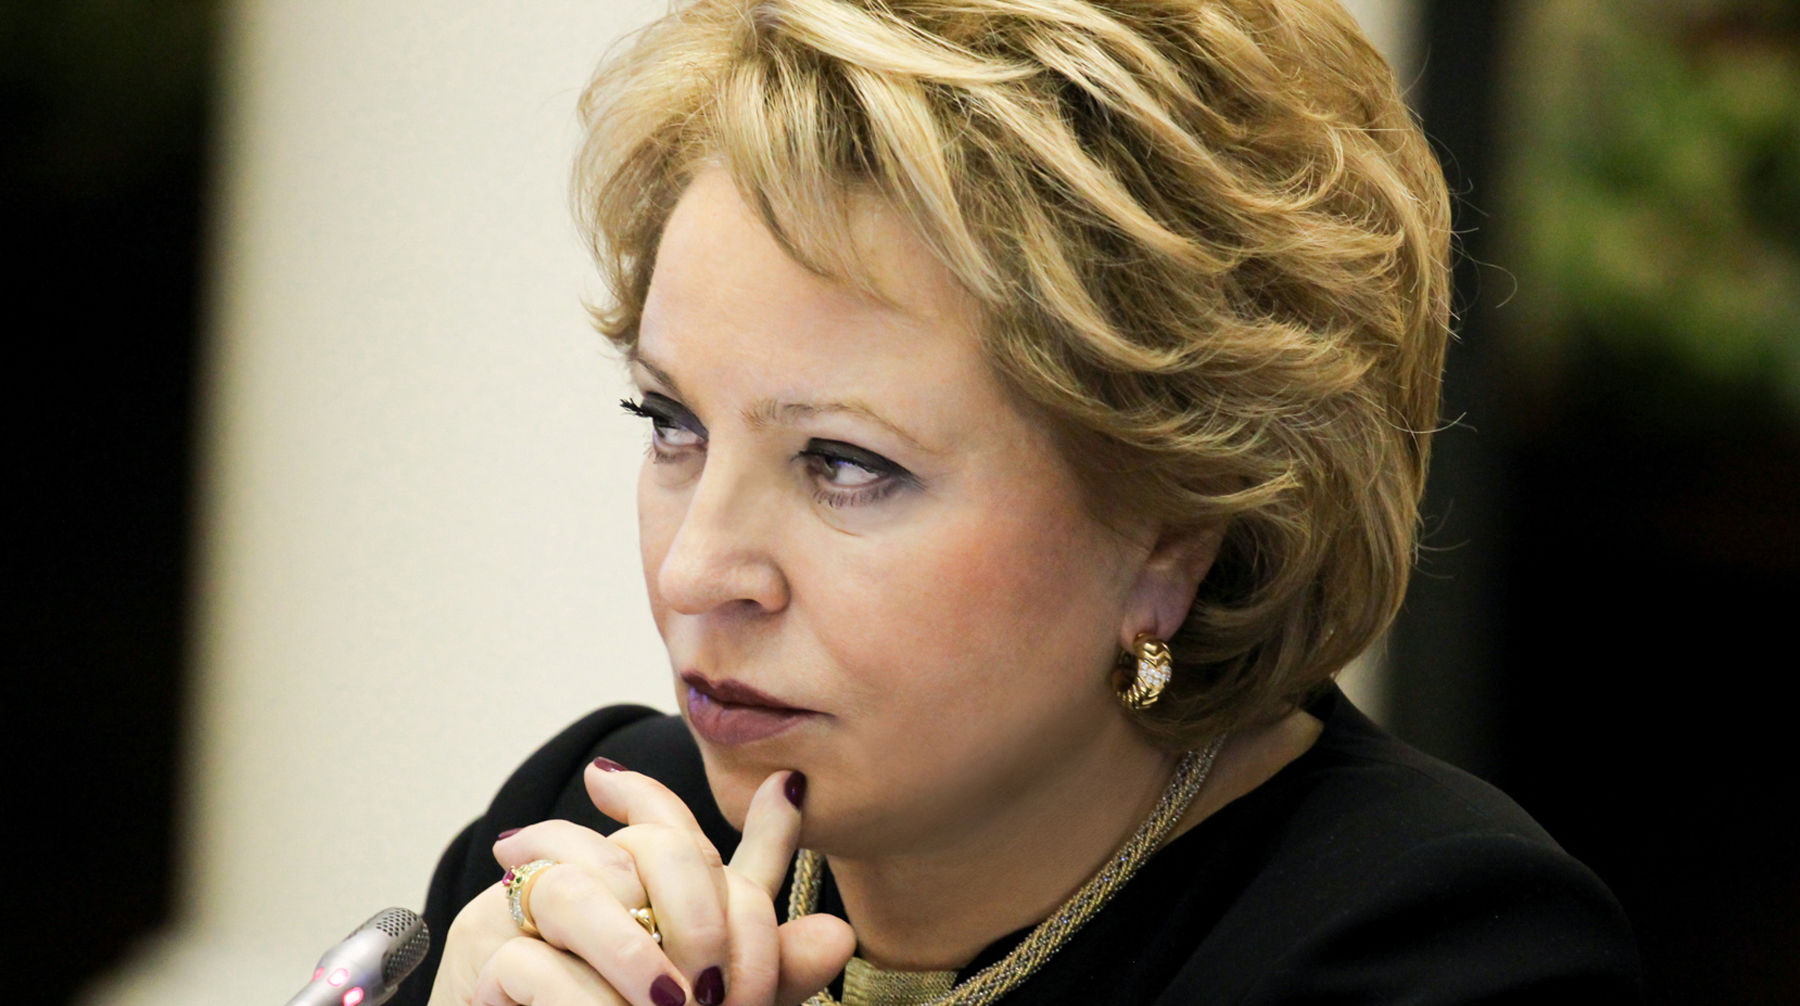 Полномочия политика в качестве сенатора истекают в сентябре 2019 года Валентина Матвиенко